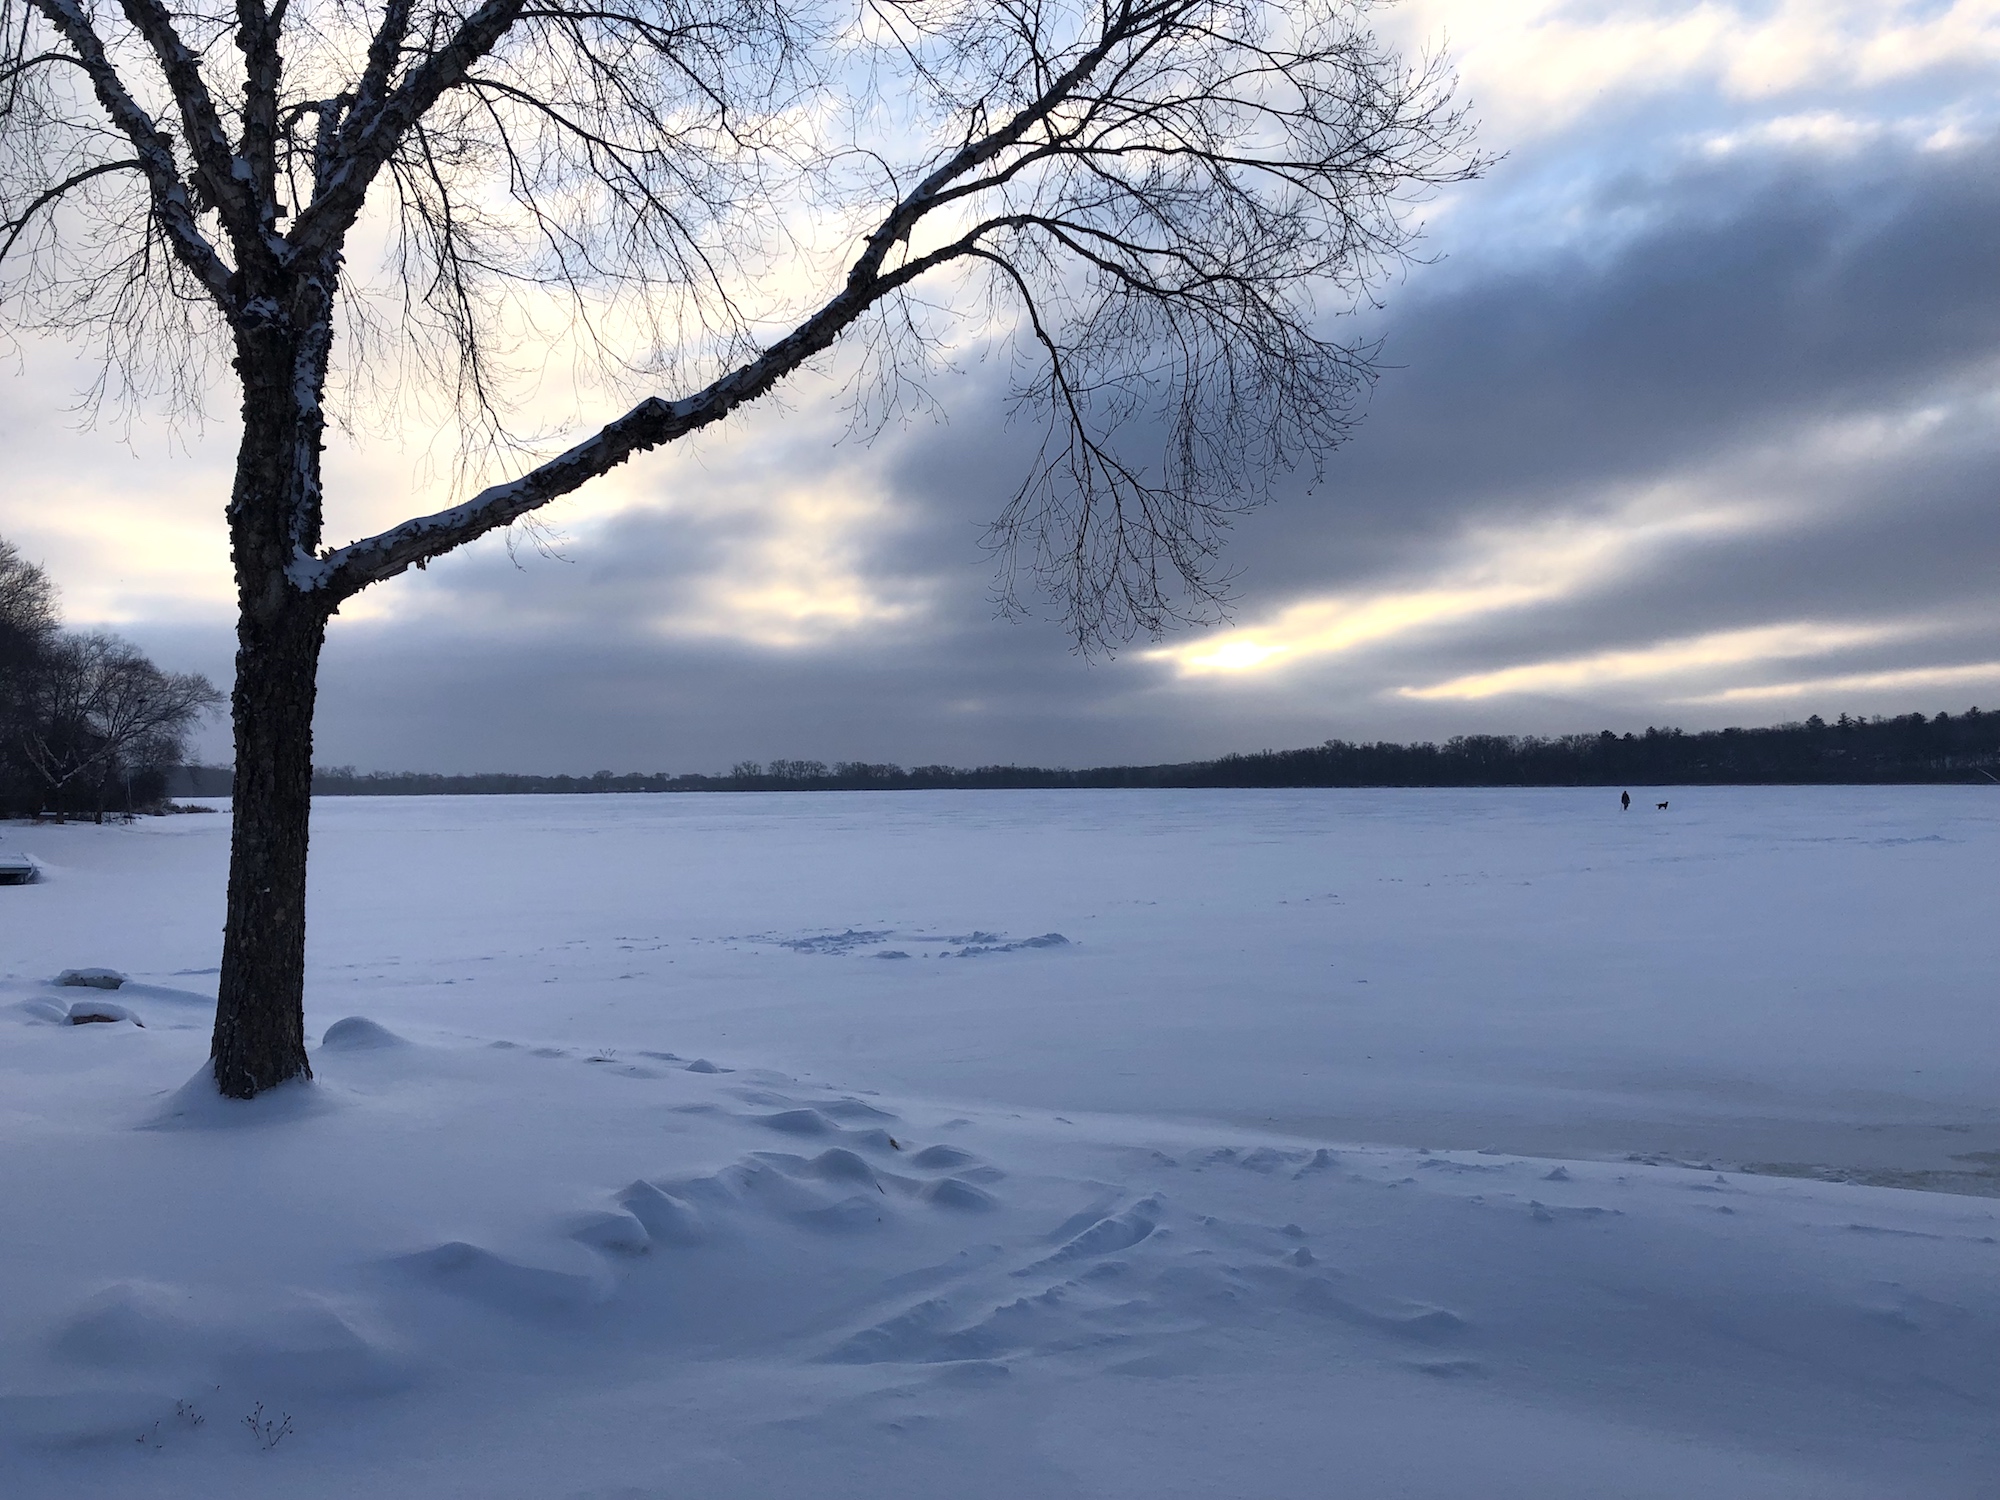 Lake Wingra on February 13, 2019.